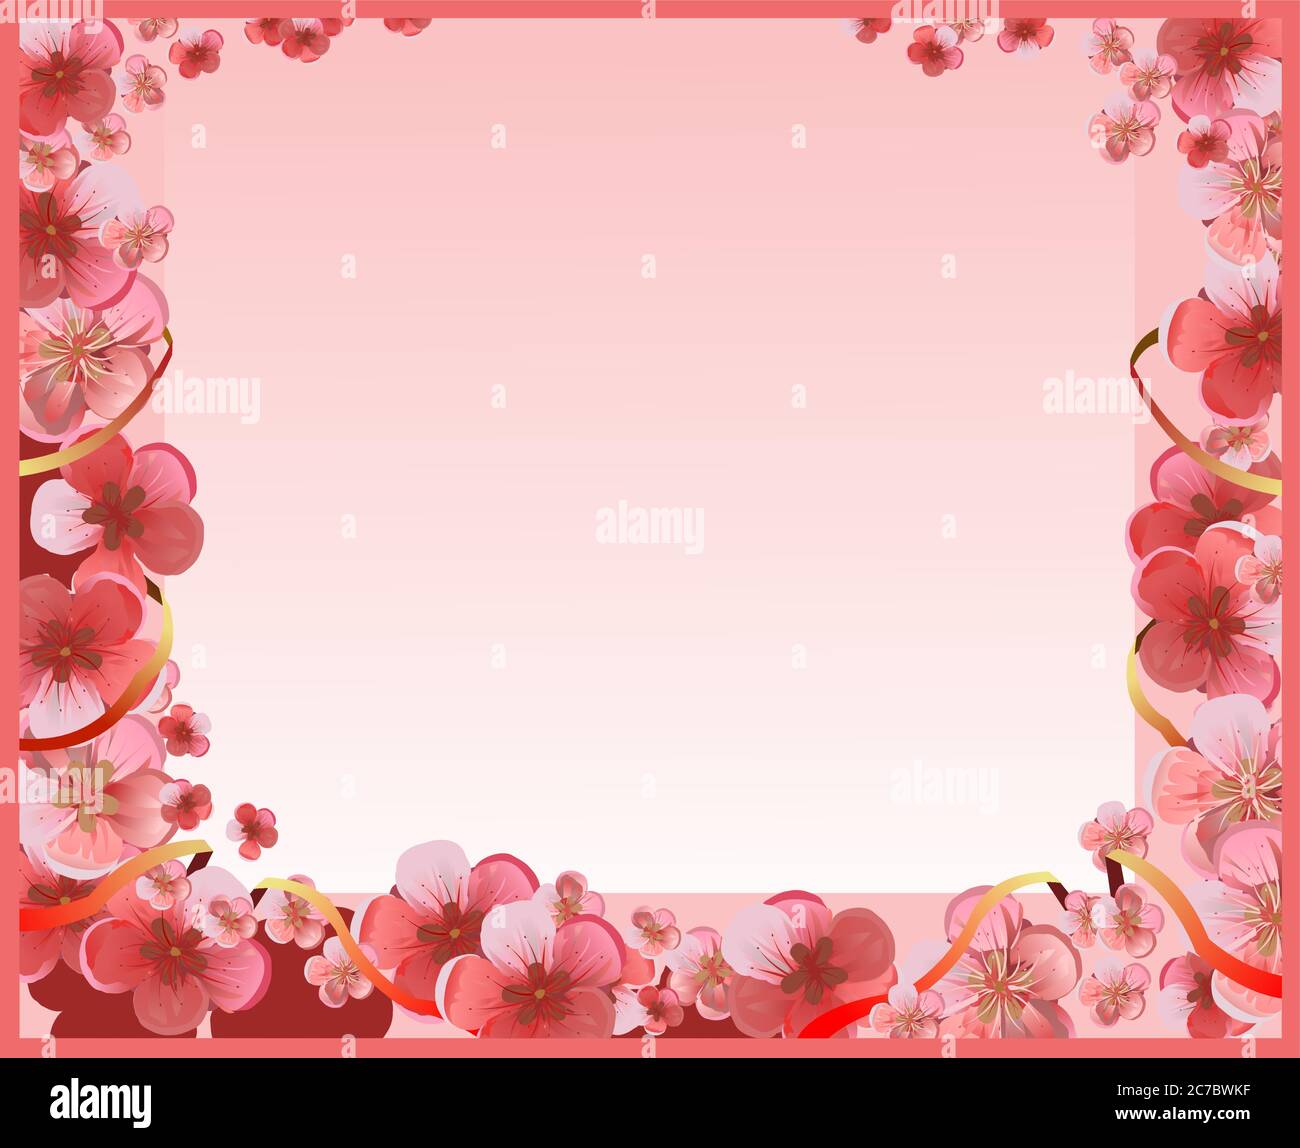 Rahmen von rosa Blumen für eine Karte. Blumen von Kirsche, Apfelbaum, Pflaume, Aprikose, Pfirsich, Birne. Rote und weiße Blüten auf einem rosa Hintergrund. Sehr Schön. Stock Vektor